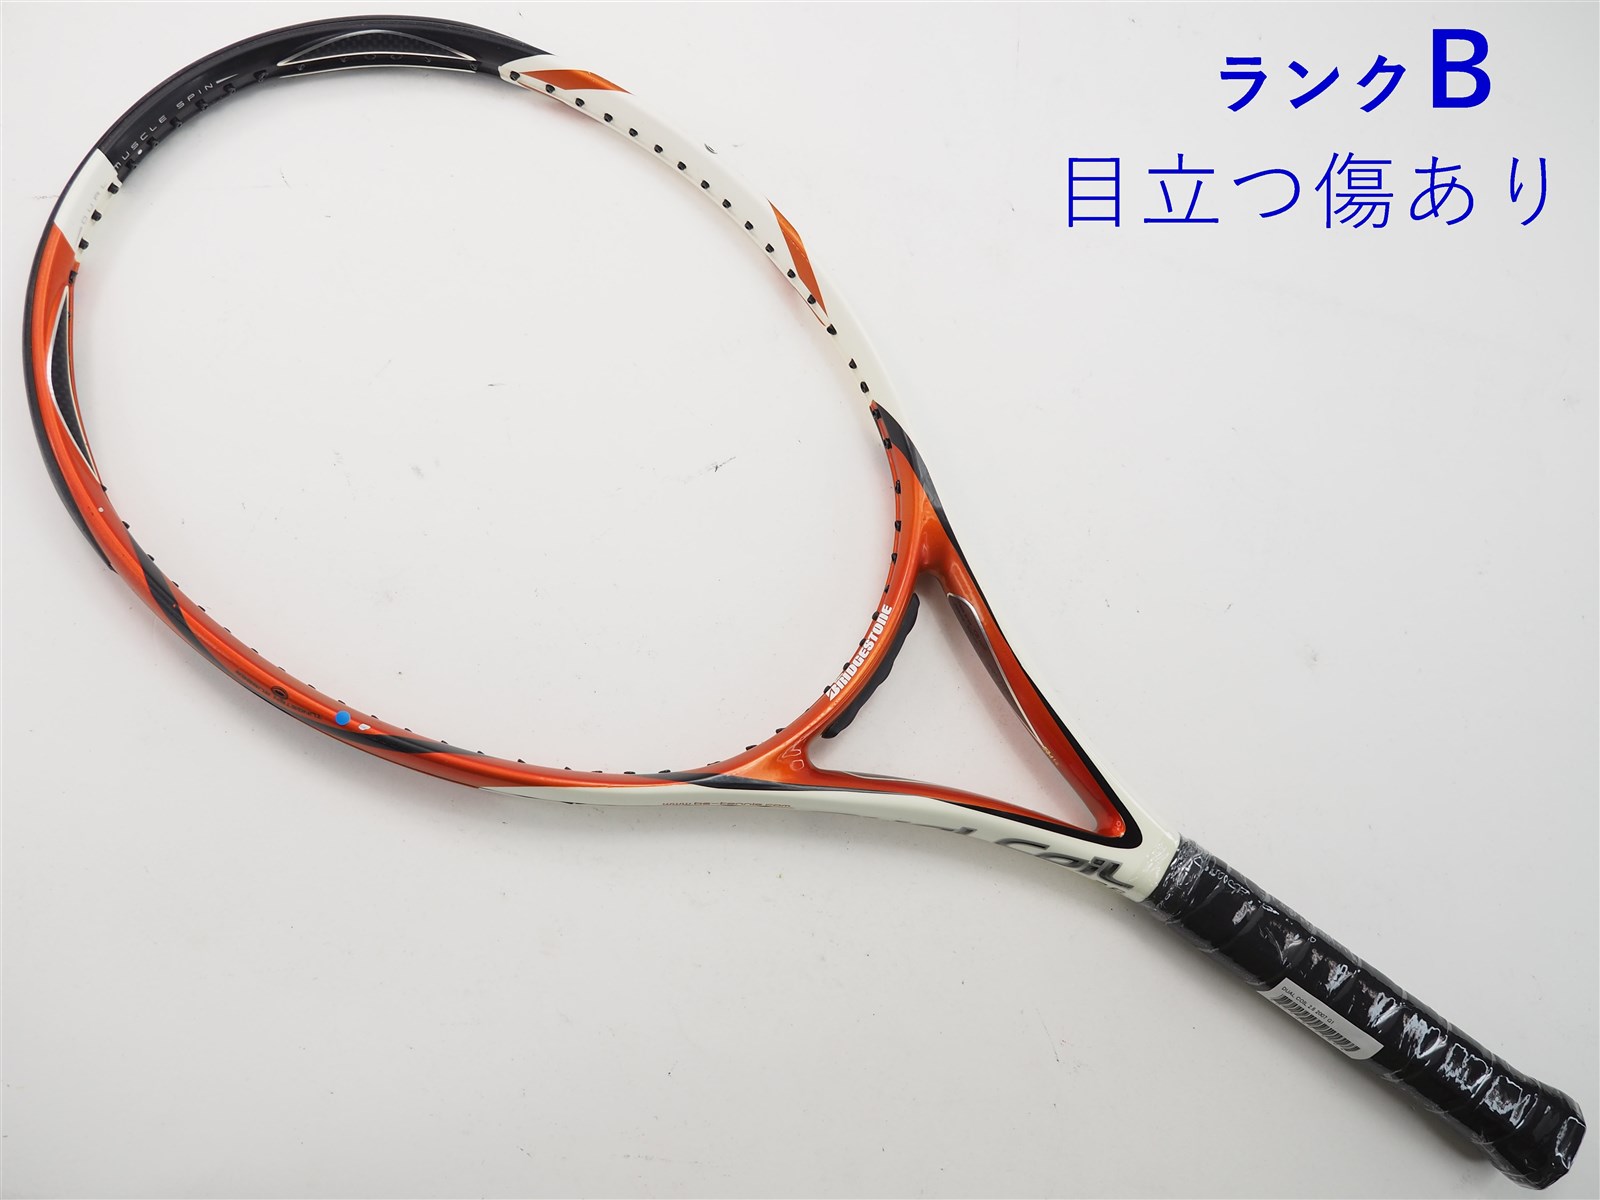 テニスラケット ブリヂストン デュアルコイル 3.15 2008年モデル【一部グロメット割れ有り】 (G2)BRIDGESTONE DUAL COIL 3.15 2008307ｇ張り上げガット状態